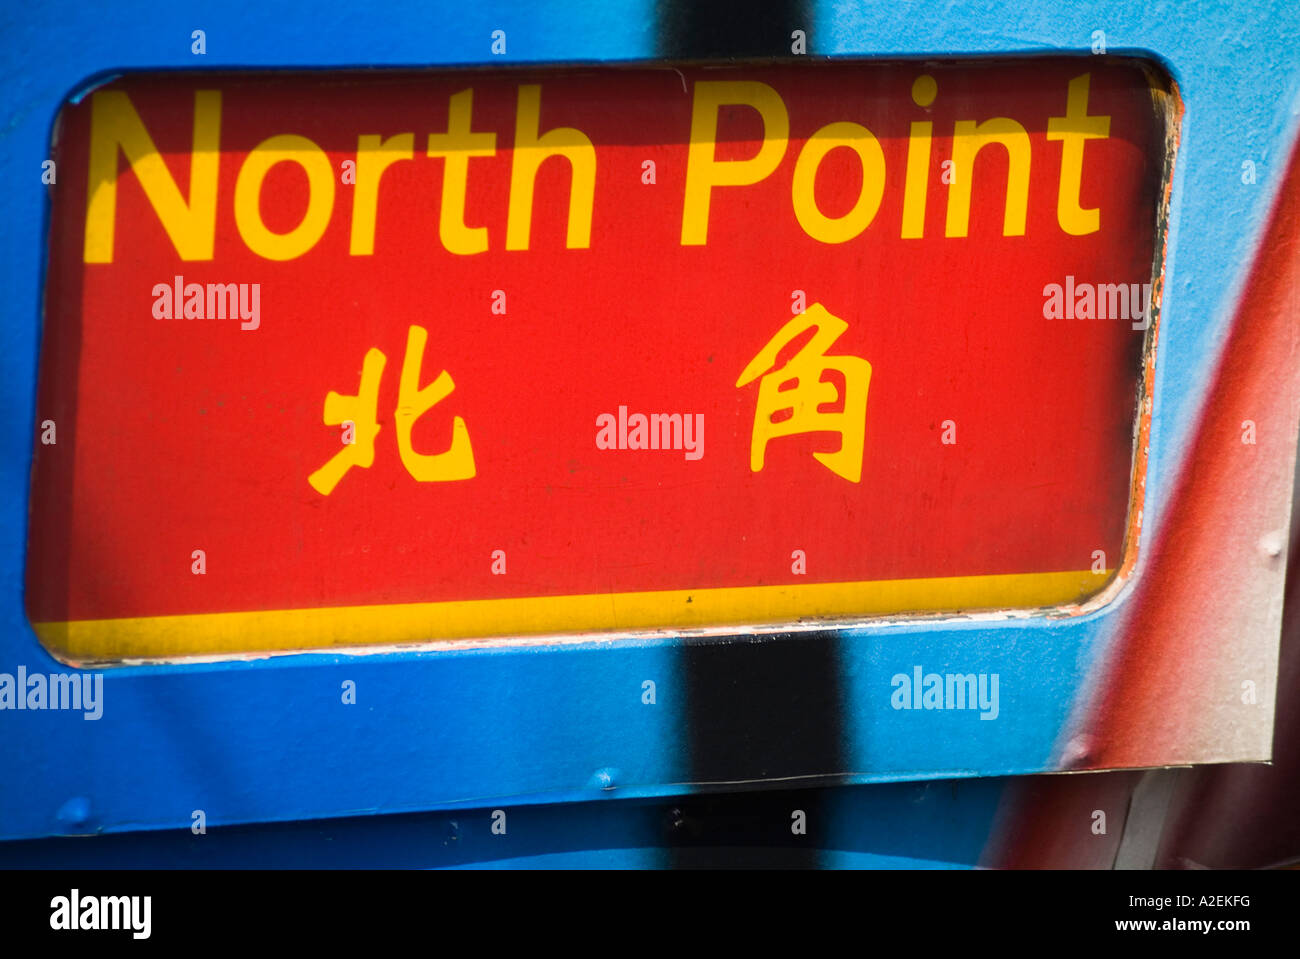 dh TRAM HONG KONG North point trams destination panneau Calligraphie anglaise et chinoise hk écriture traduction bilingue signes de langue bhz Banque D'Images